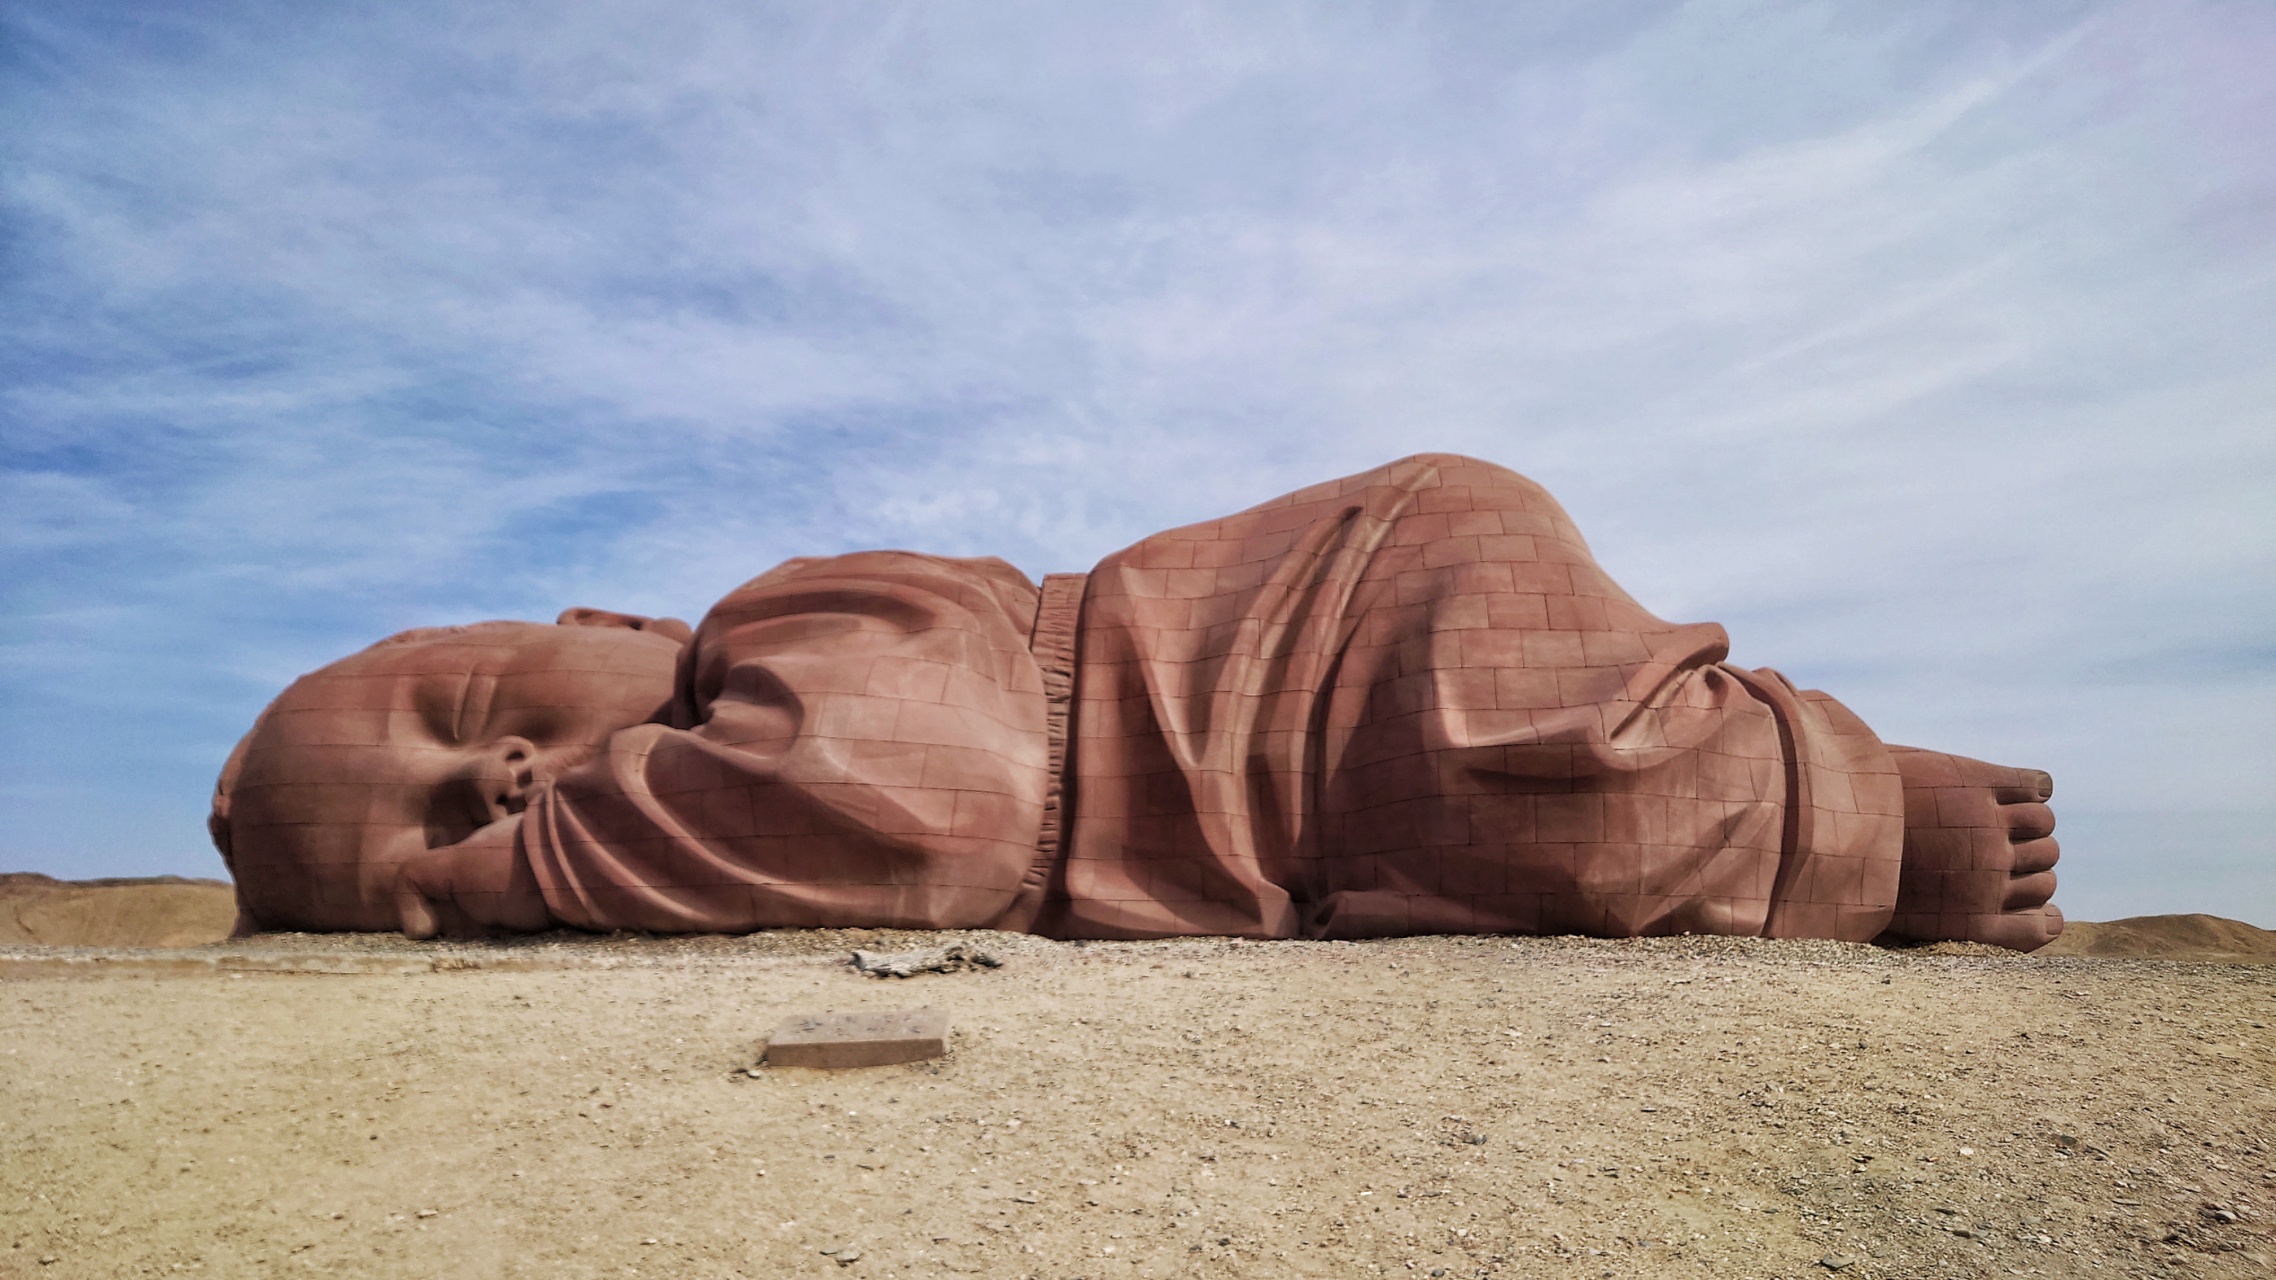 路过瓜州戈壁 围观大型雕塑《大地之子》 巧遇了作者董书兵老师